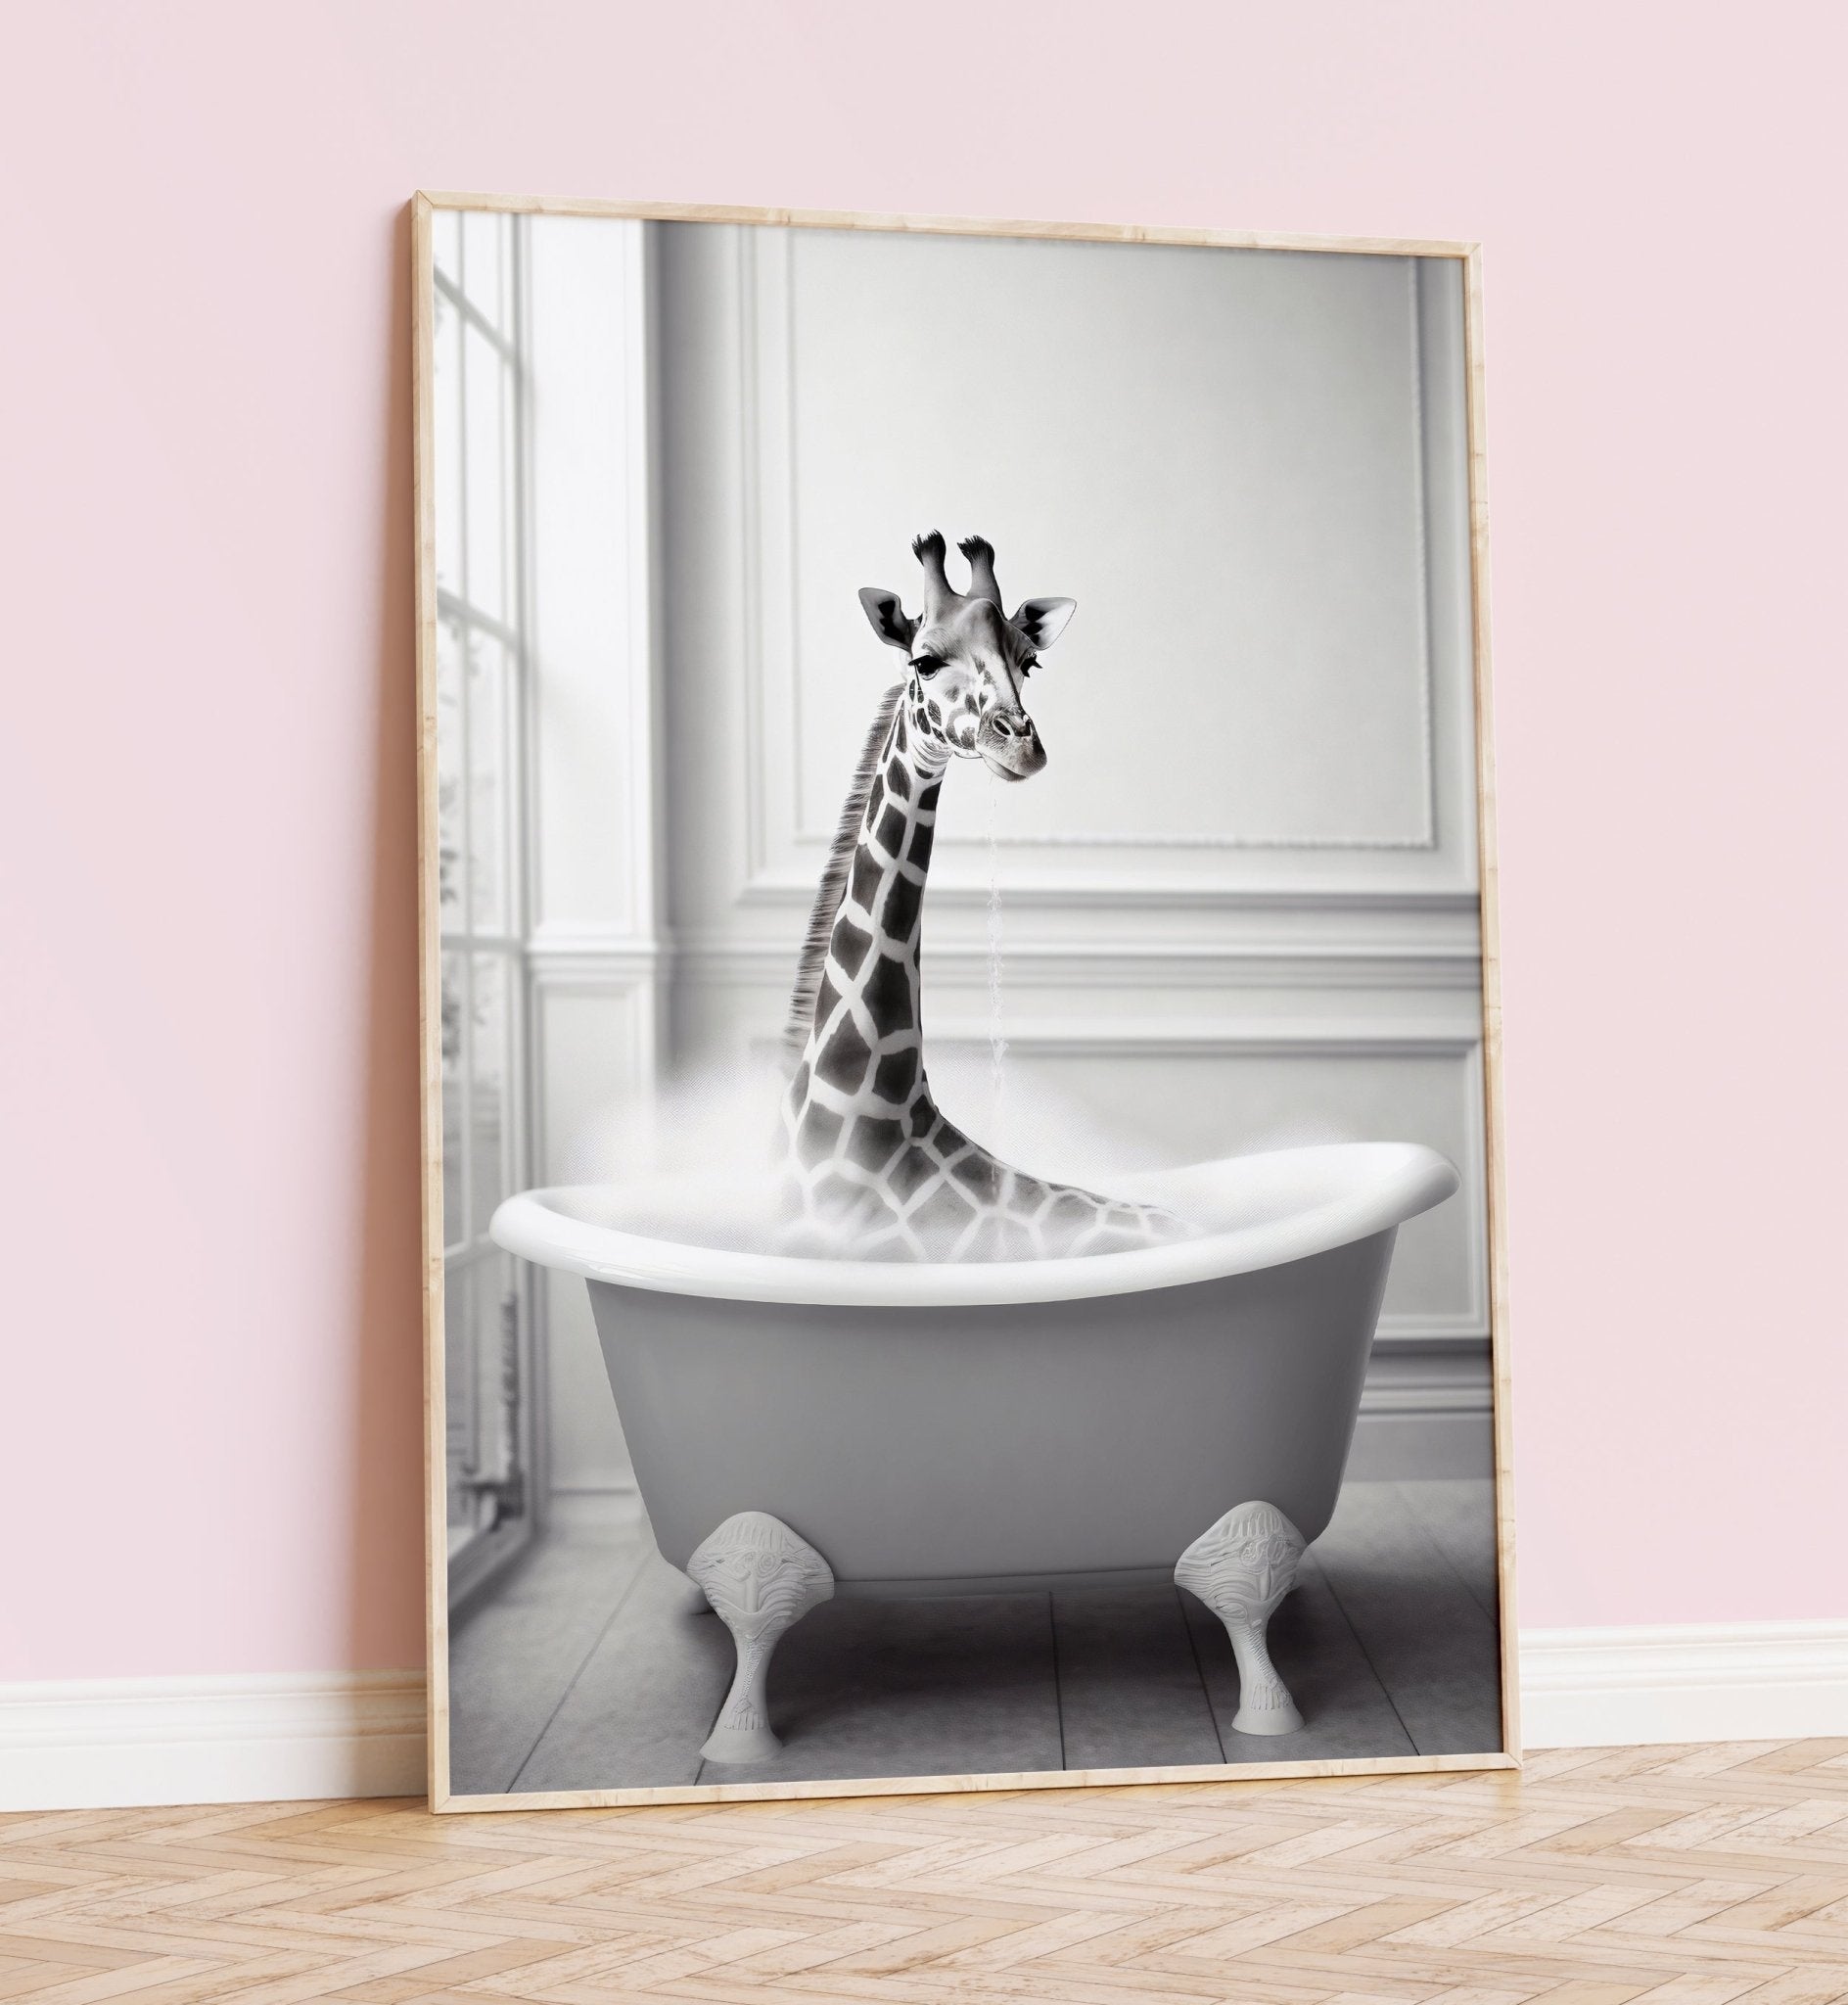 Giraffe In Bathtub Print